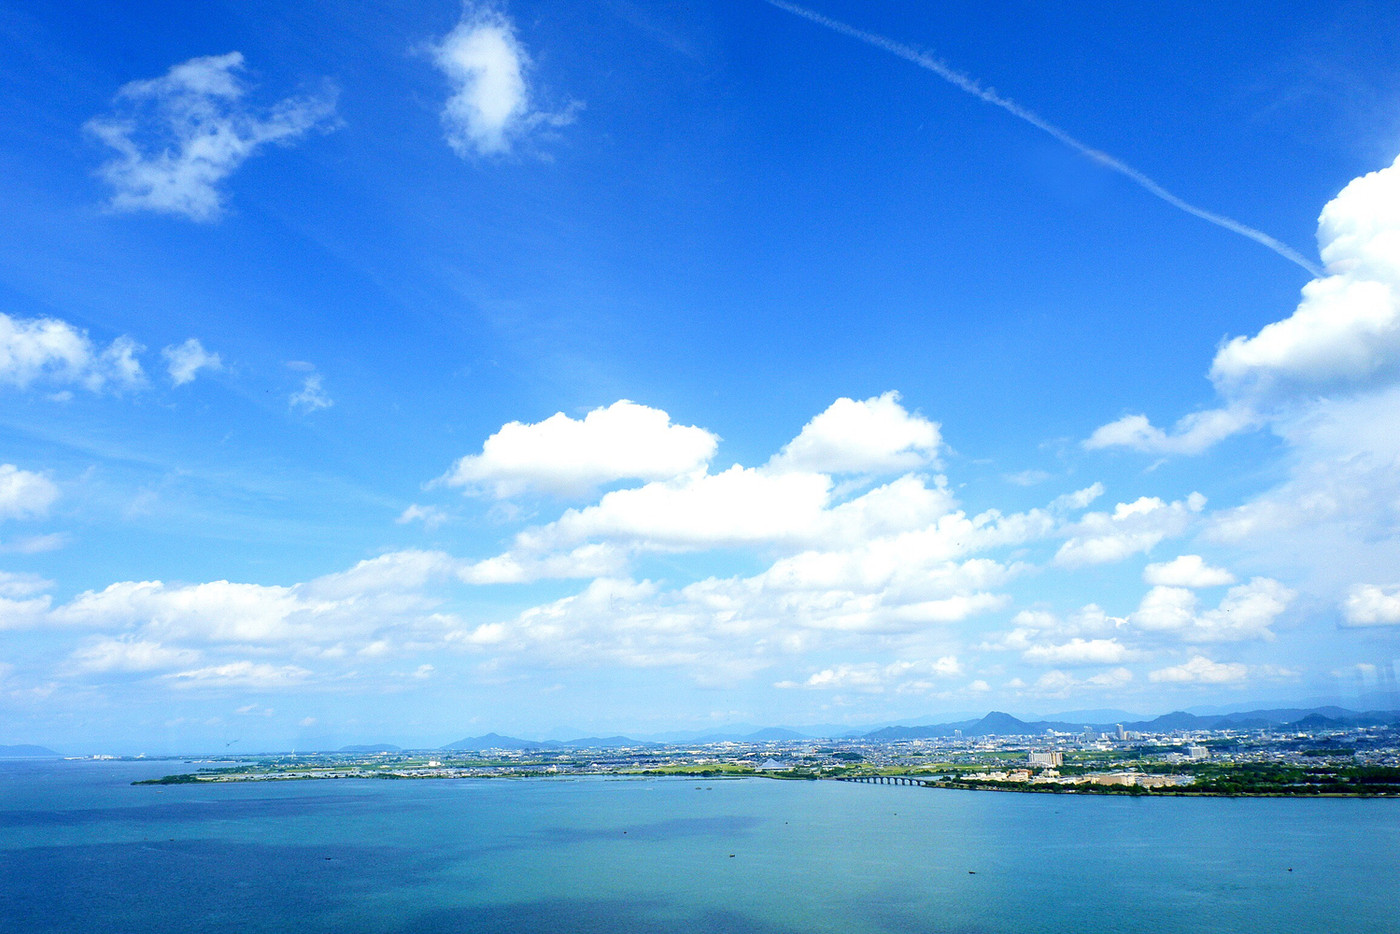 去年の夏、大津プリンスホテルでランチビュッフェを食べた時の 最上階からのスカイビュー。飛行機雲と青空、琵琶湖が美しい眺めでした。